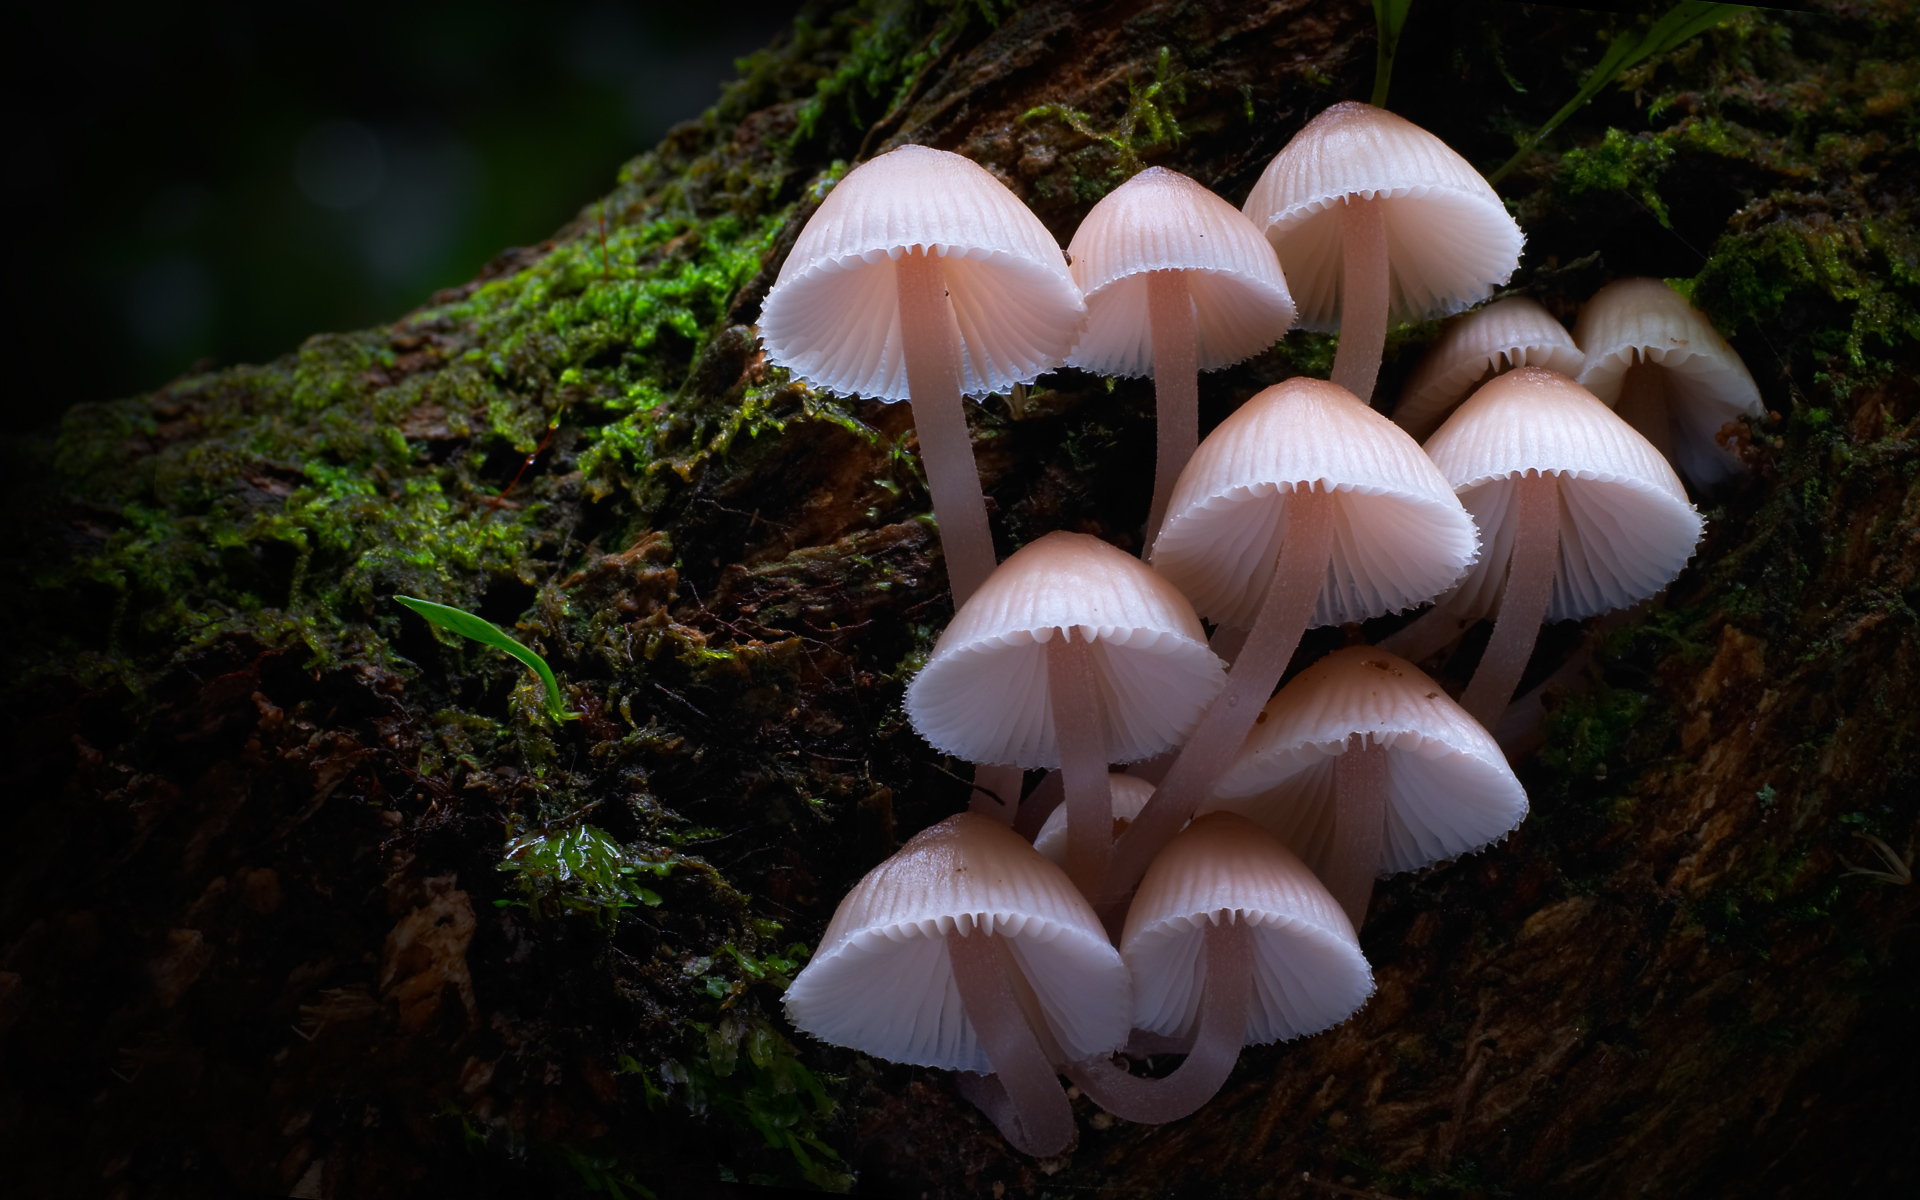 Fungi: The Web of Life